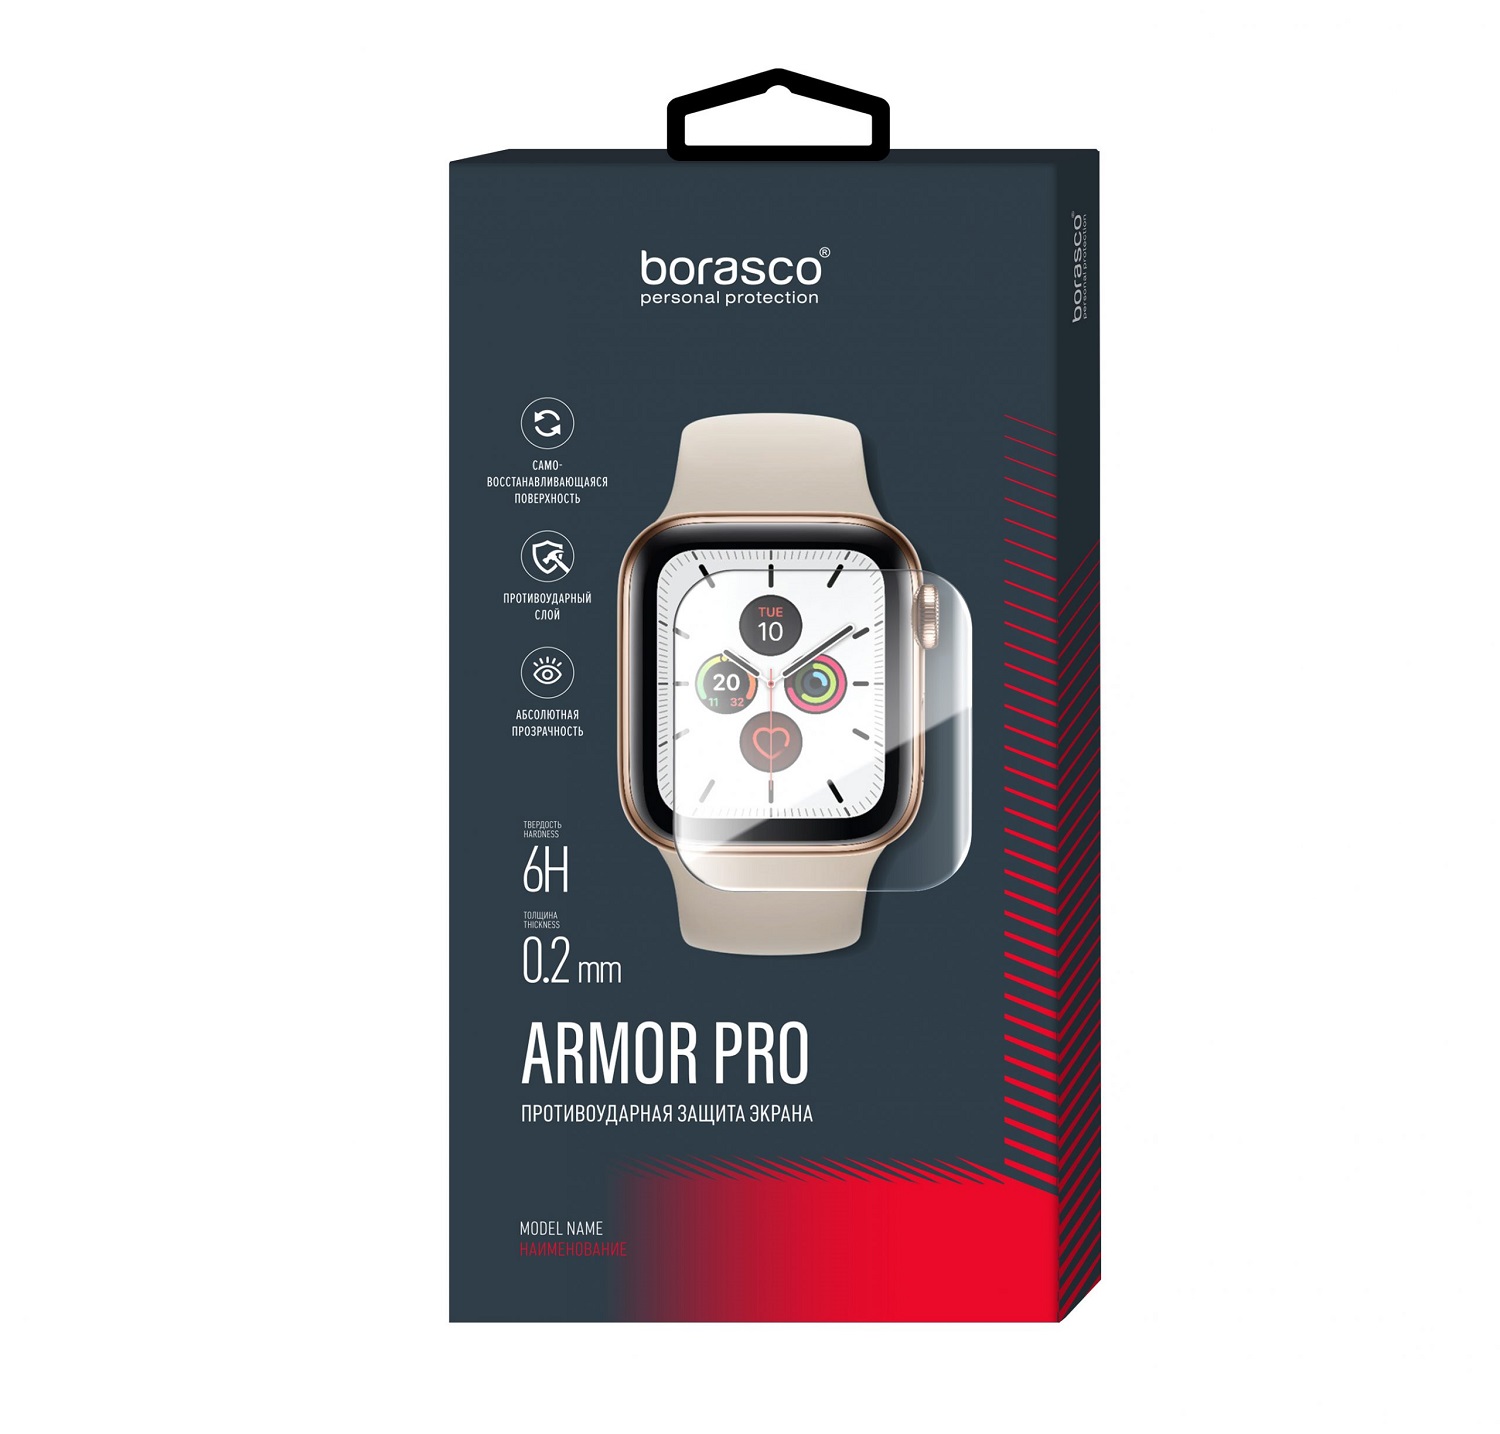 Защита экрана BoraSCO Armor Pro для Xiaomi Mi Watch защита экрана borasco armor pro для amazfit pace